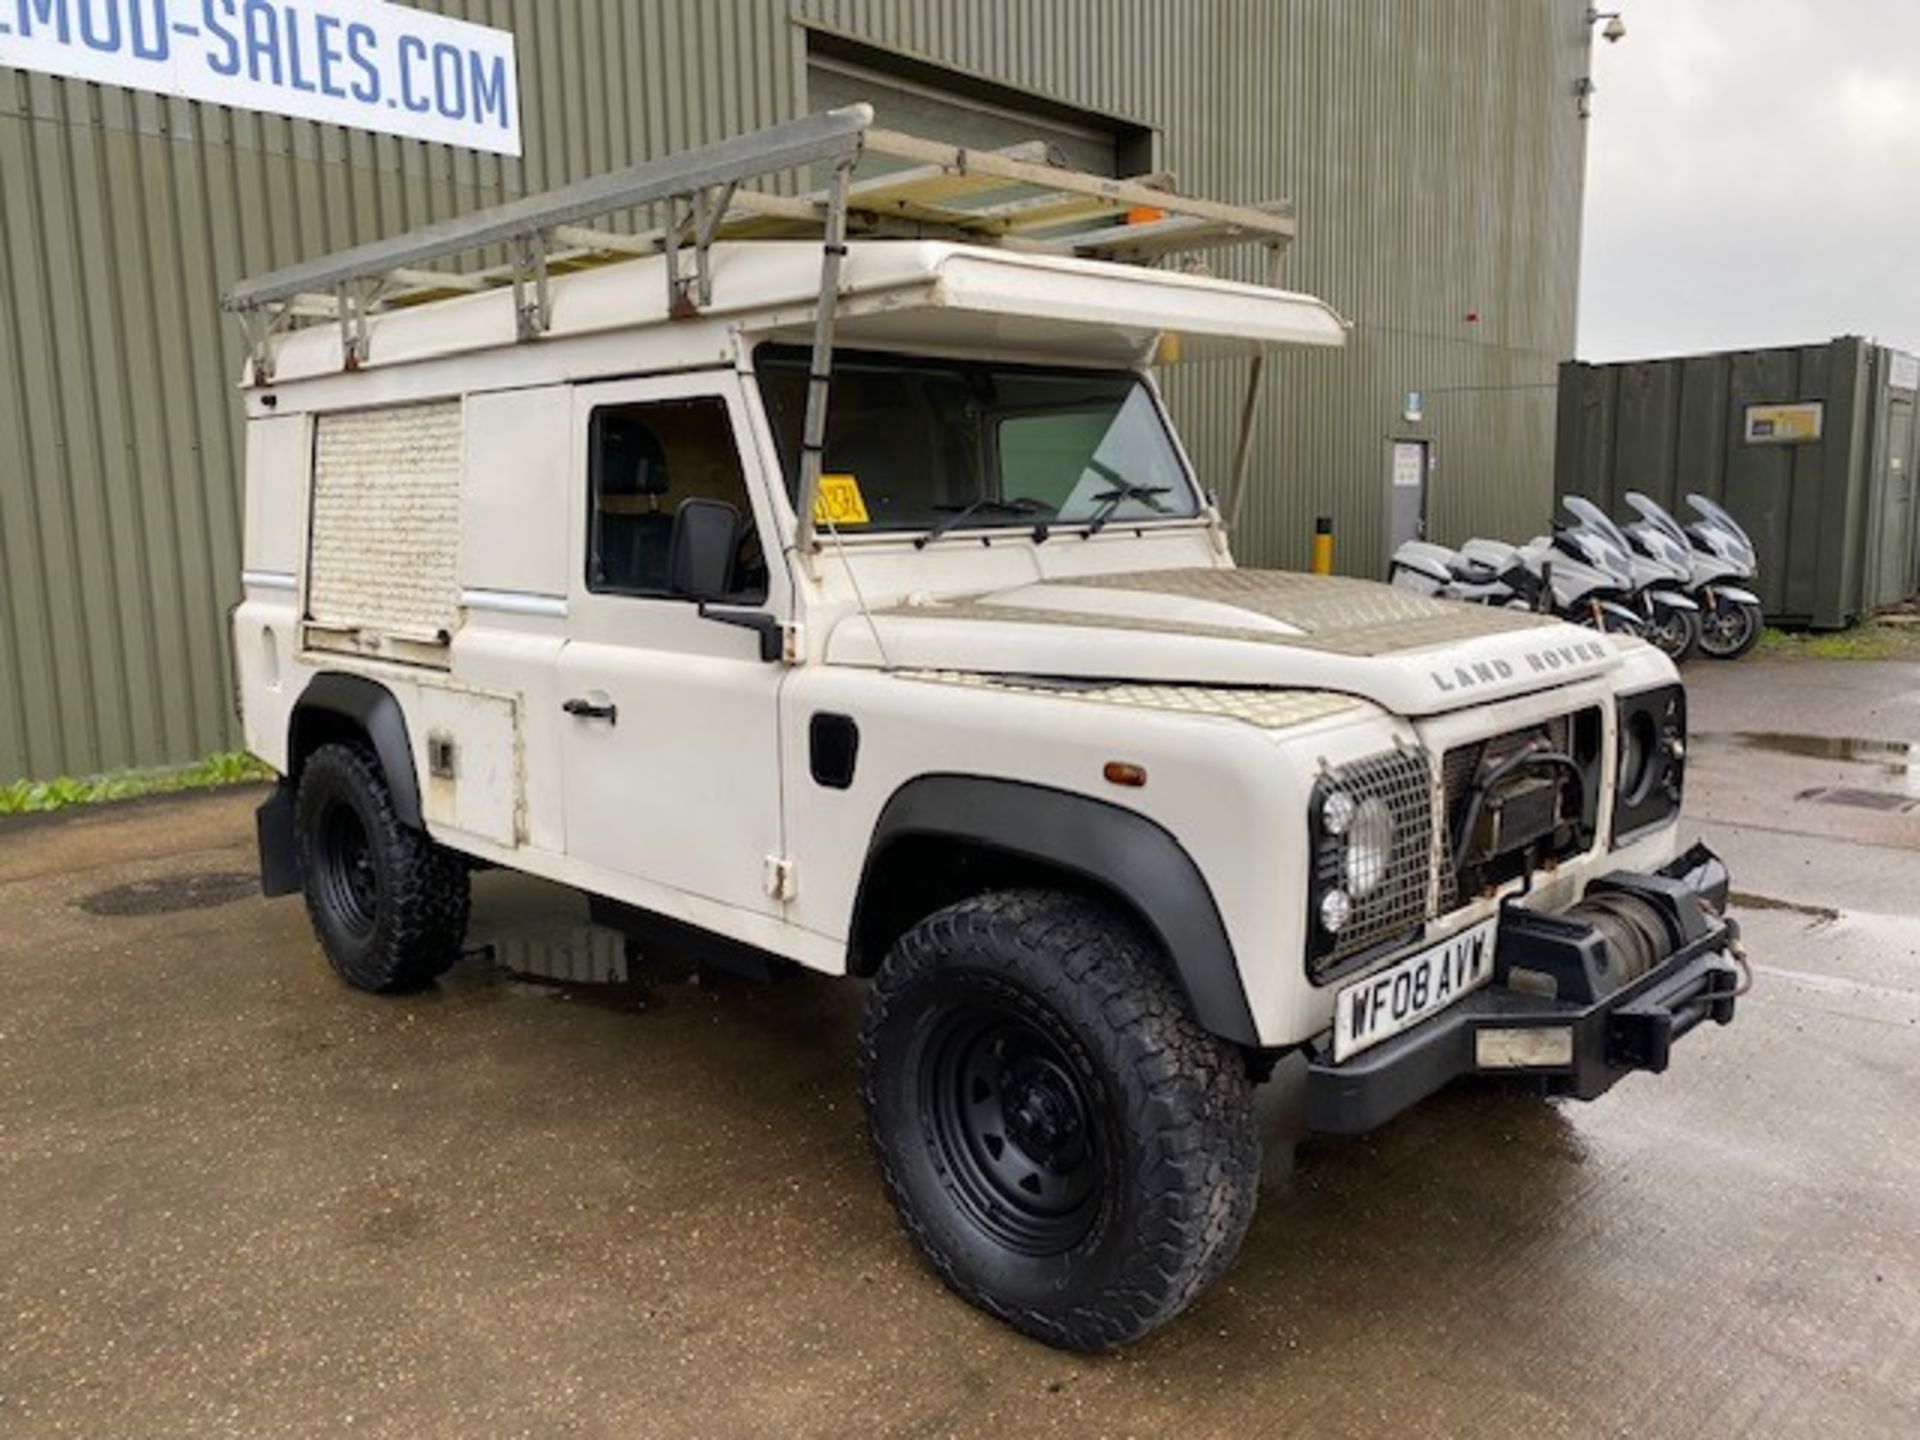 Land Rover Defender 110 2.4 Utility (mobile workshop) - Image 64 of 64